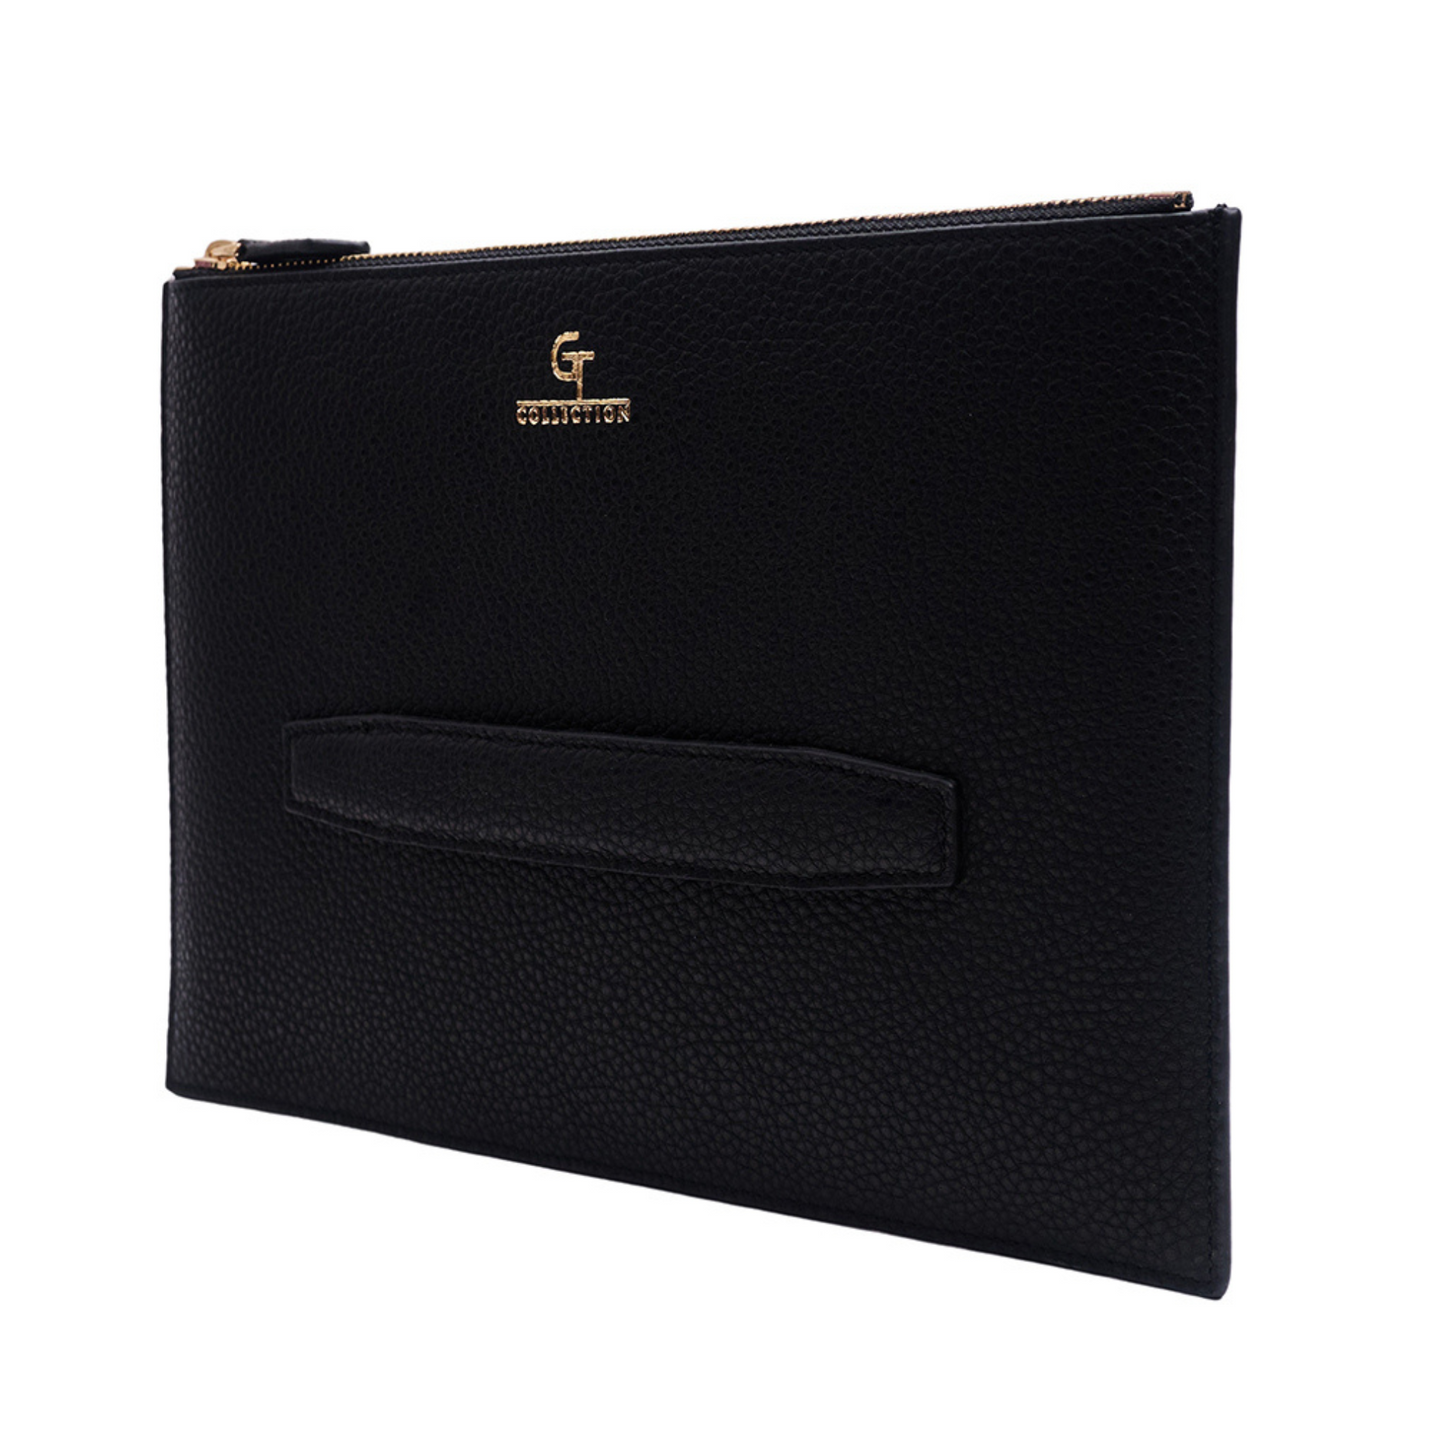 Men's Leather Clutch Bag - Black with golden details